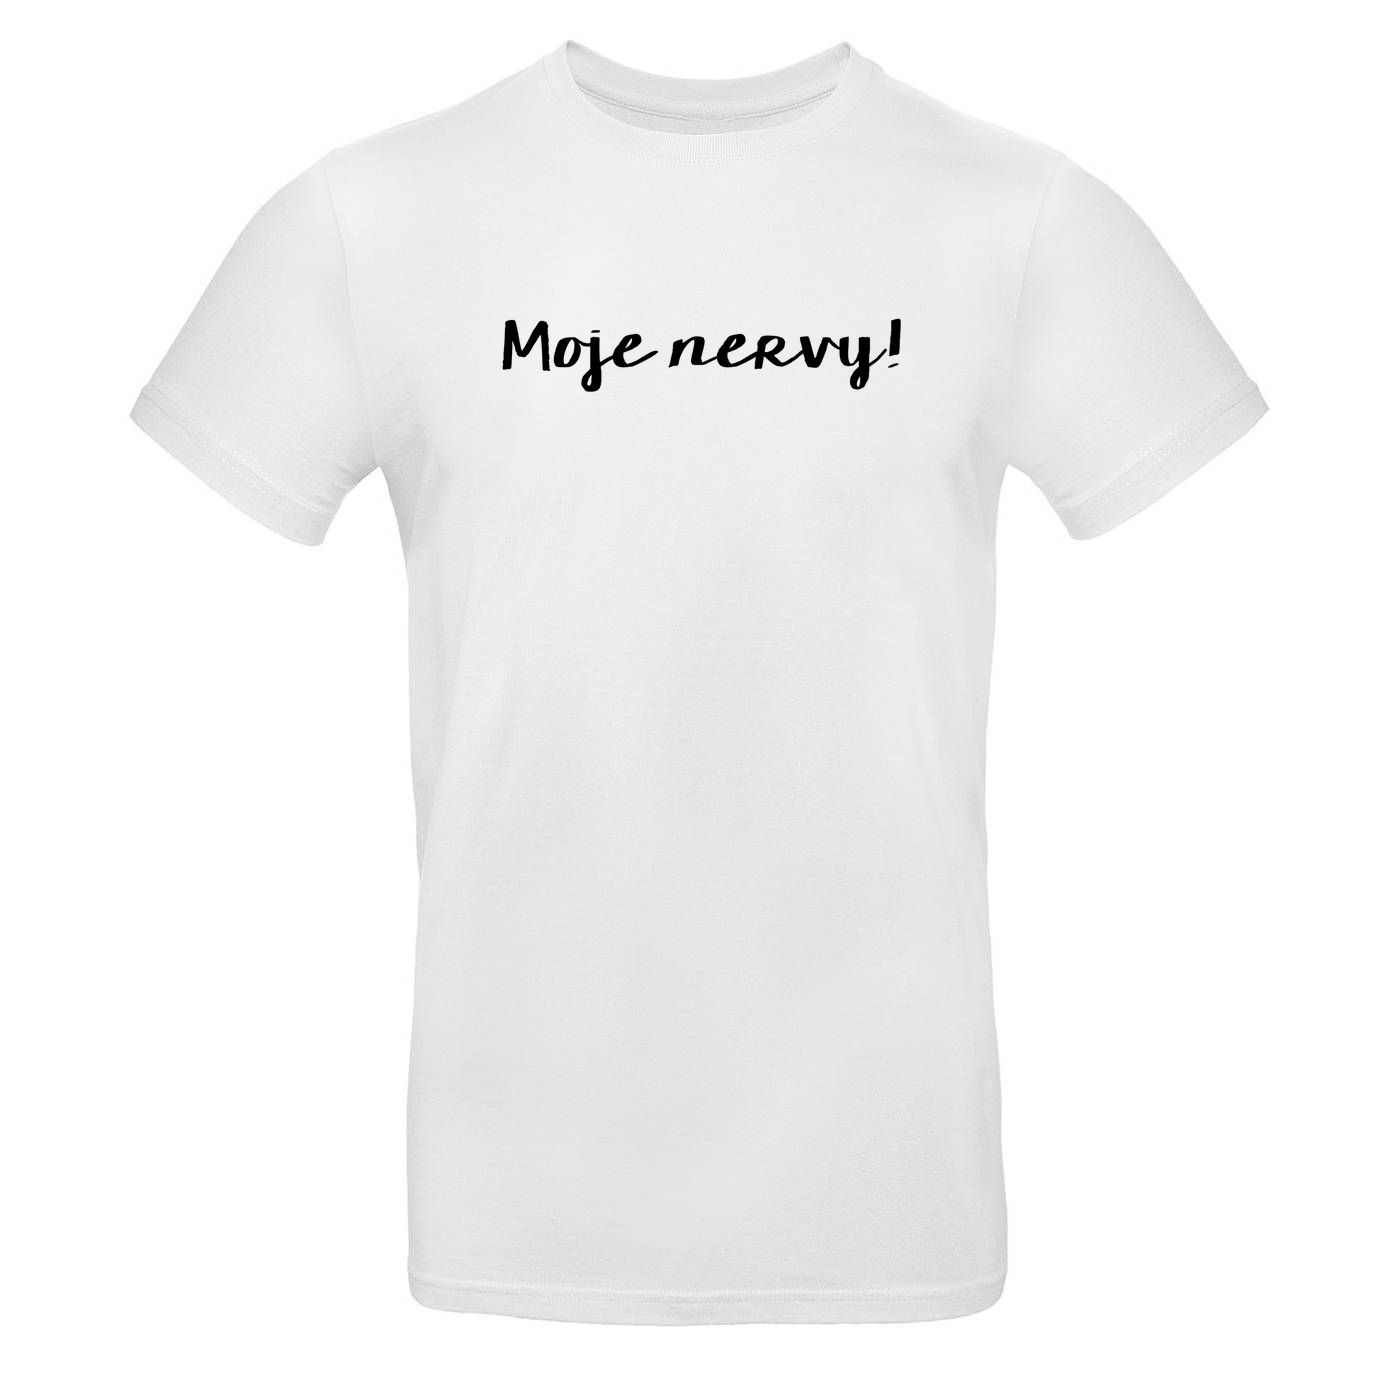 Mužské tričko - Moje Nervy!